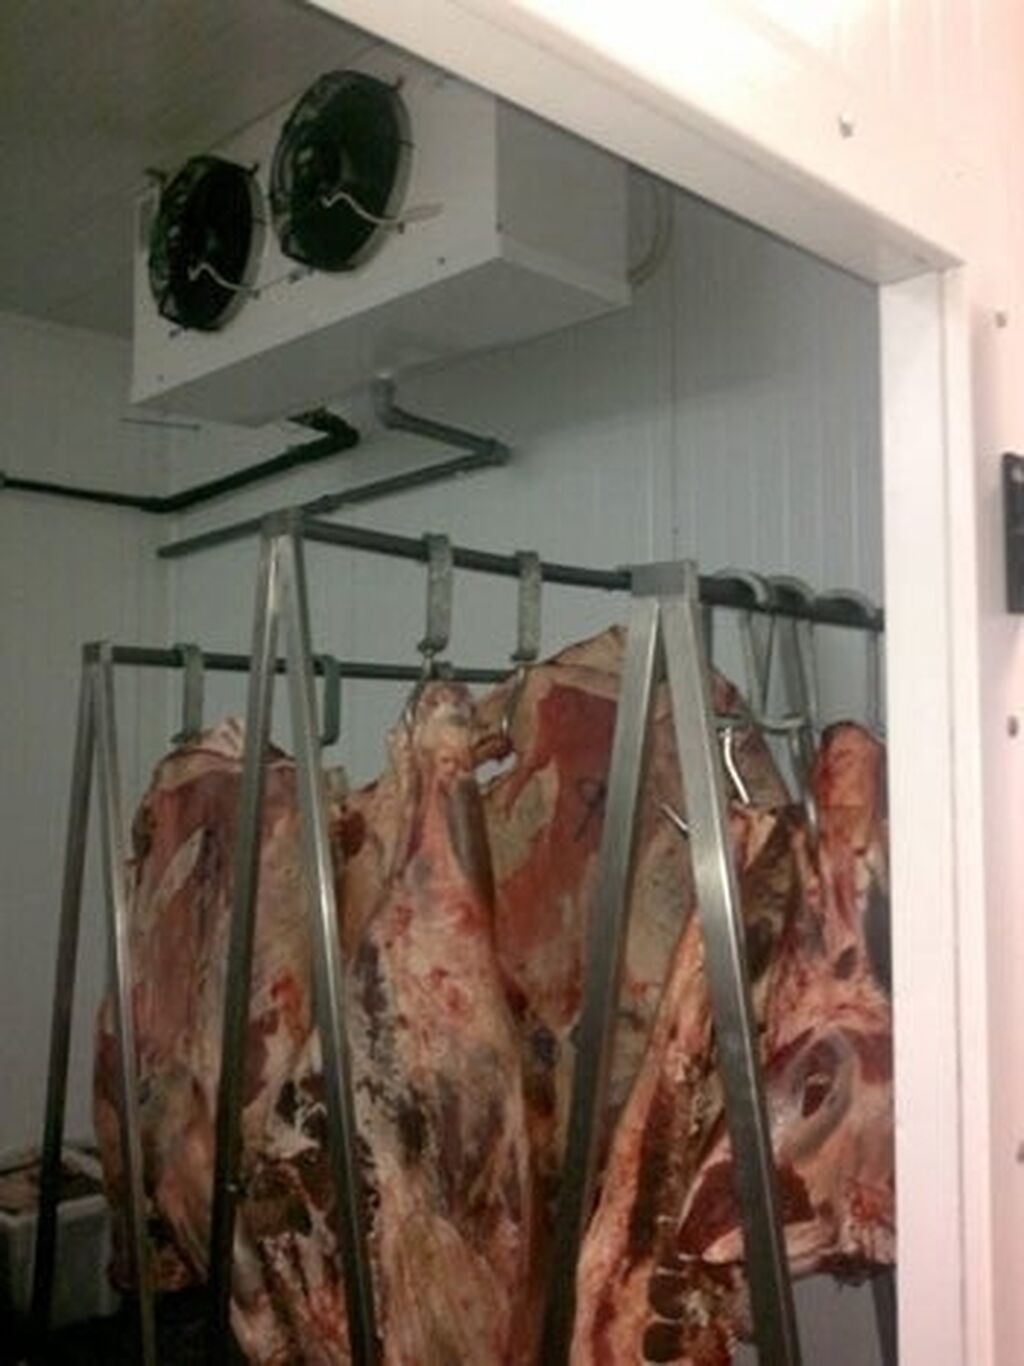 Холодильная камера для мяса